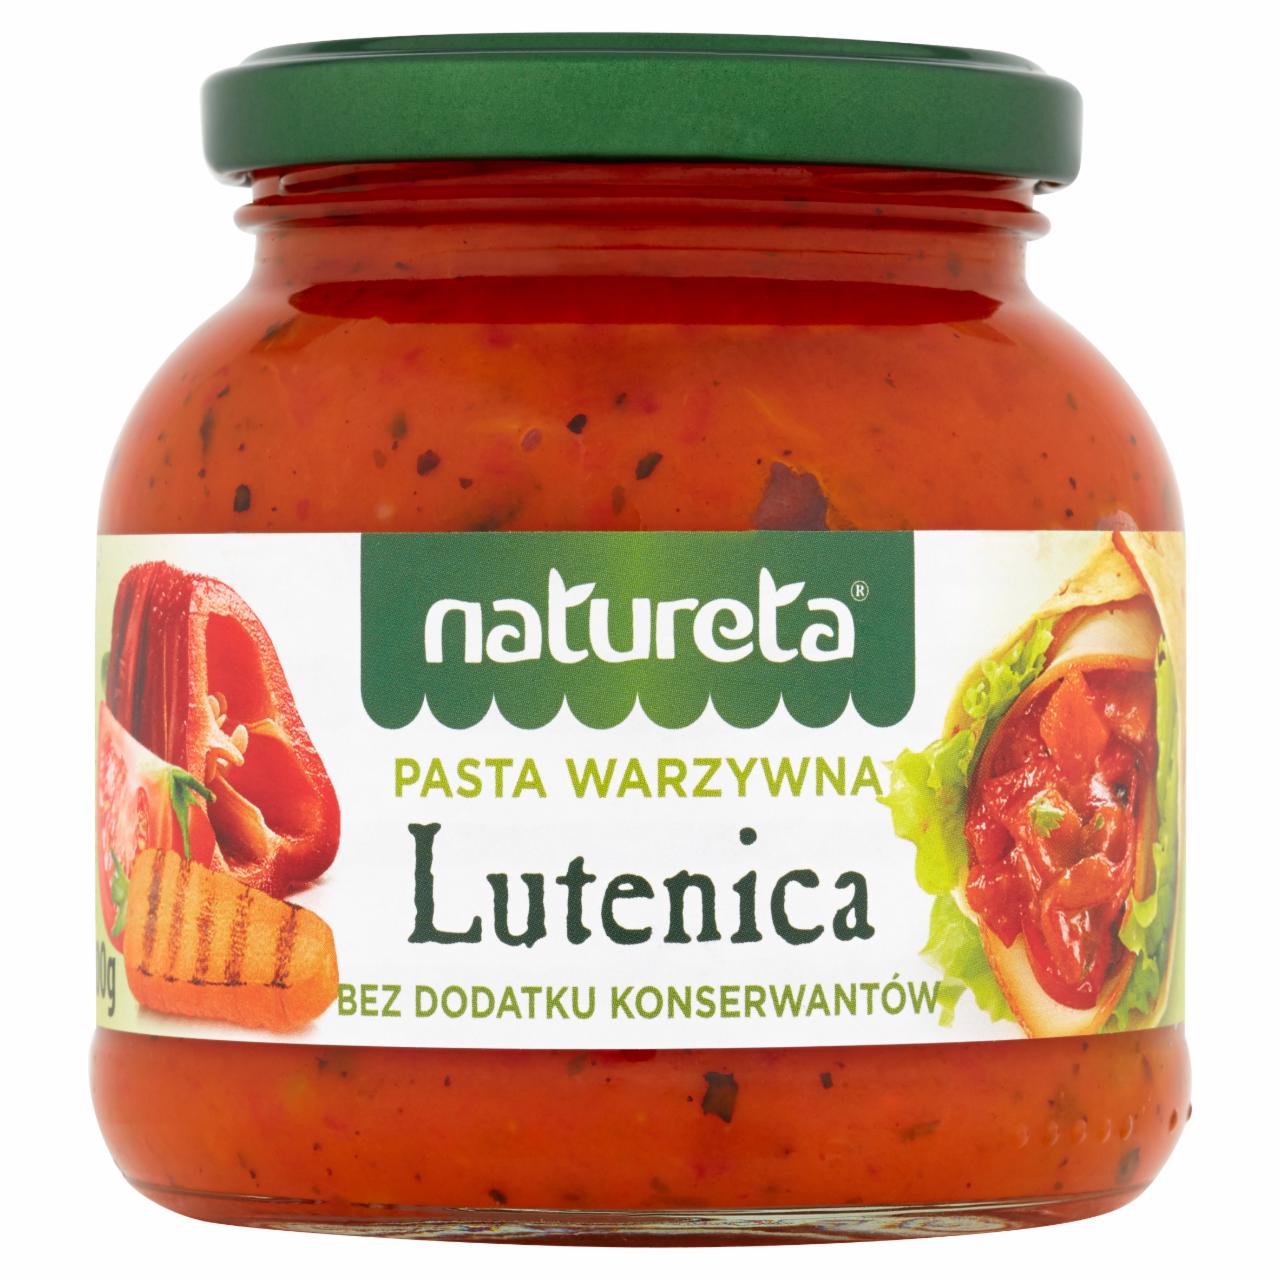 Zdjęcia - Natureta Pasta warzywna Lutenica 300 g